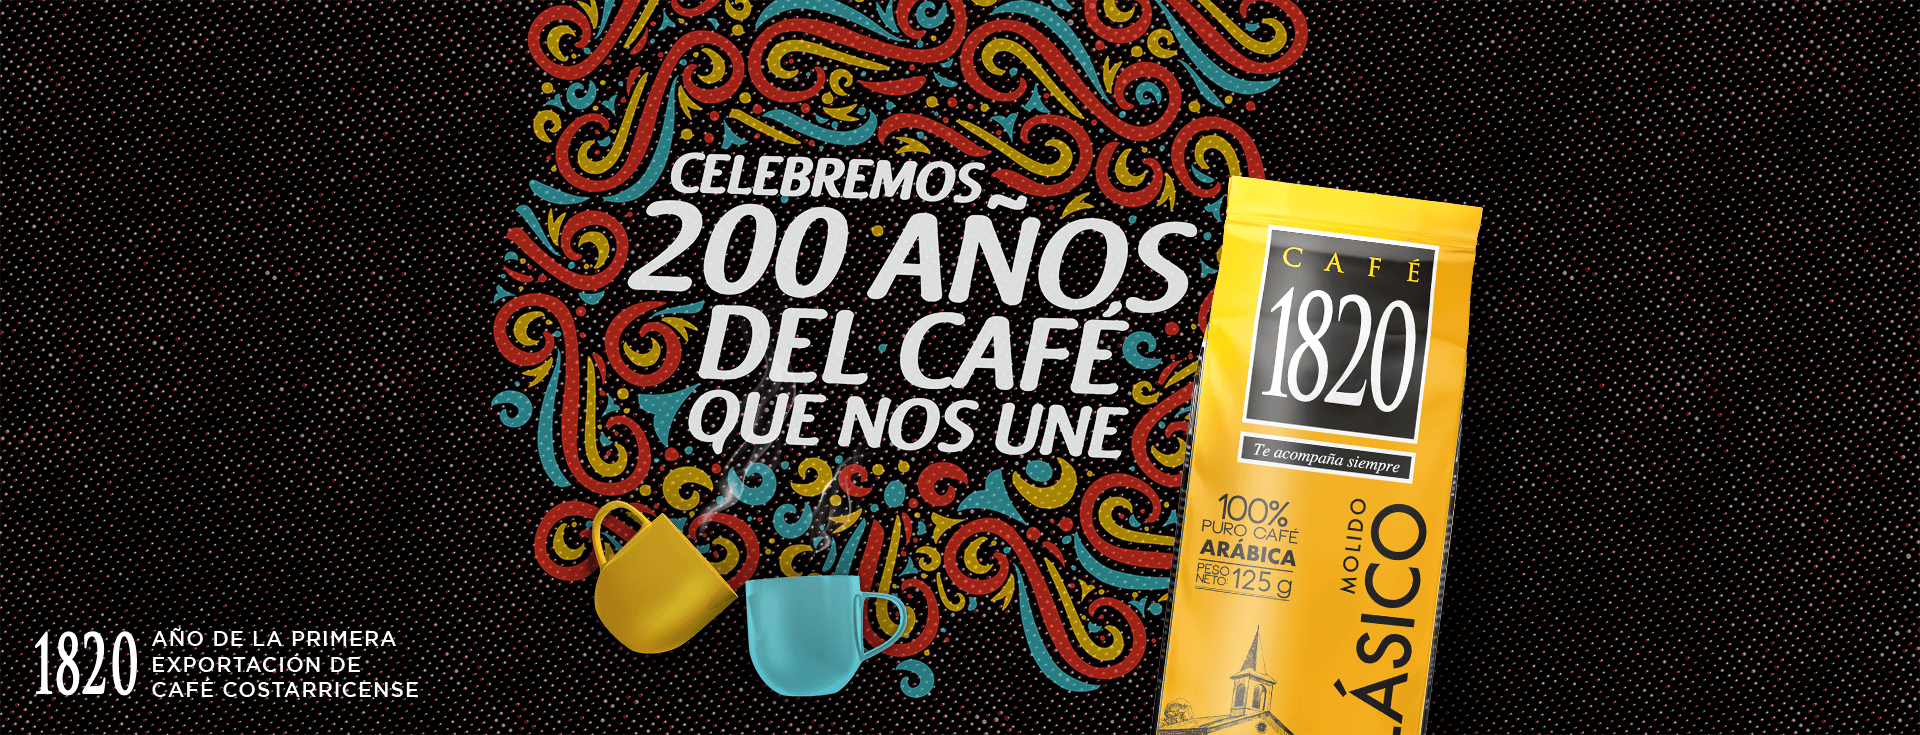 200 años de café 1820